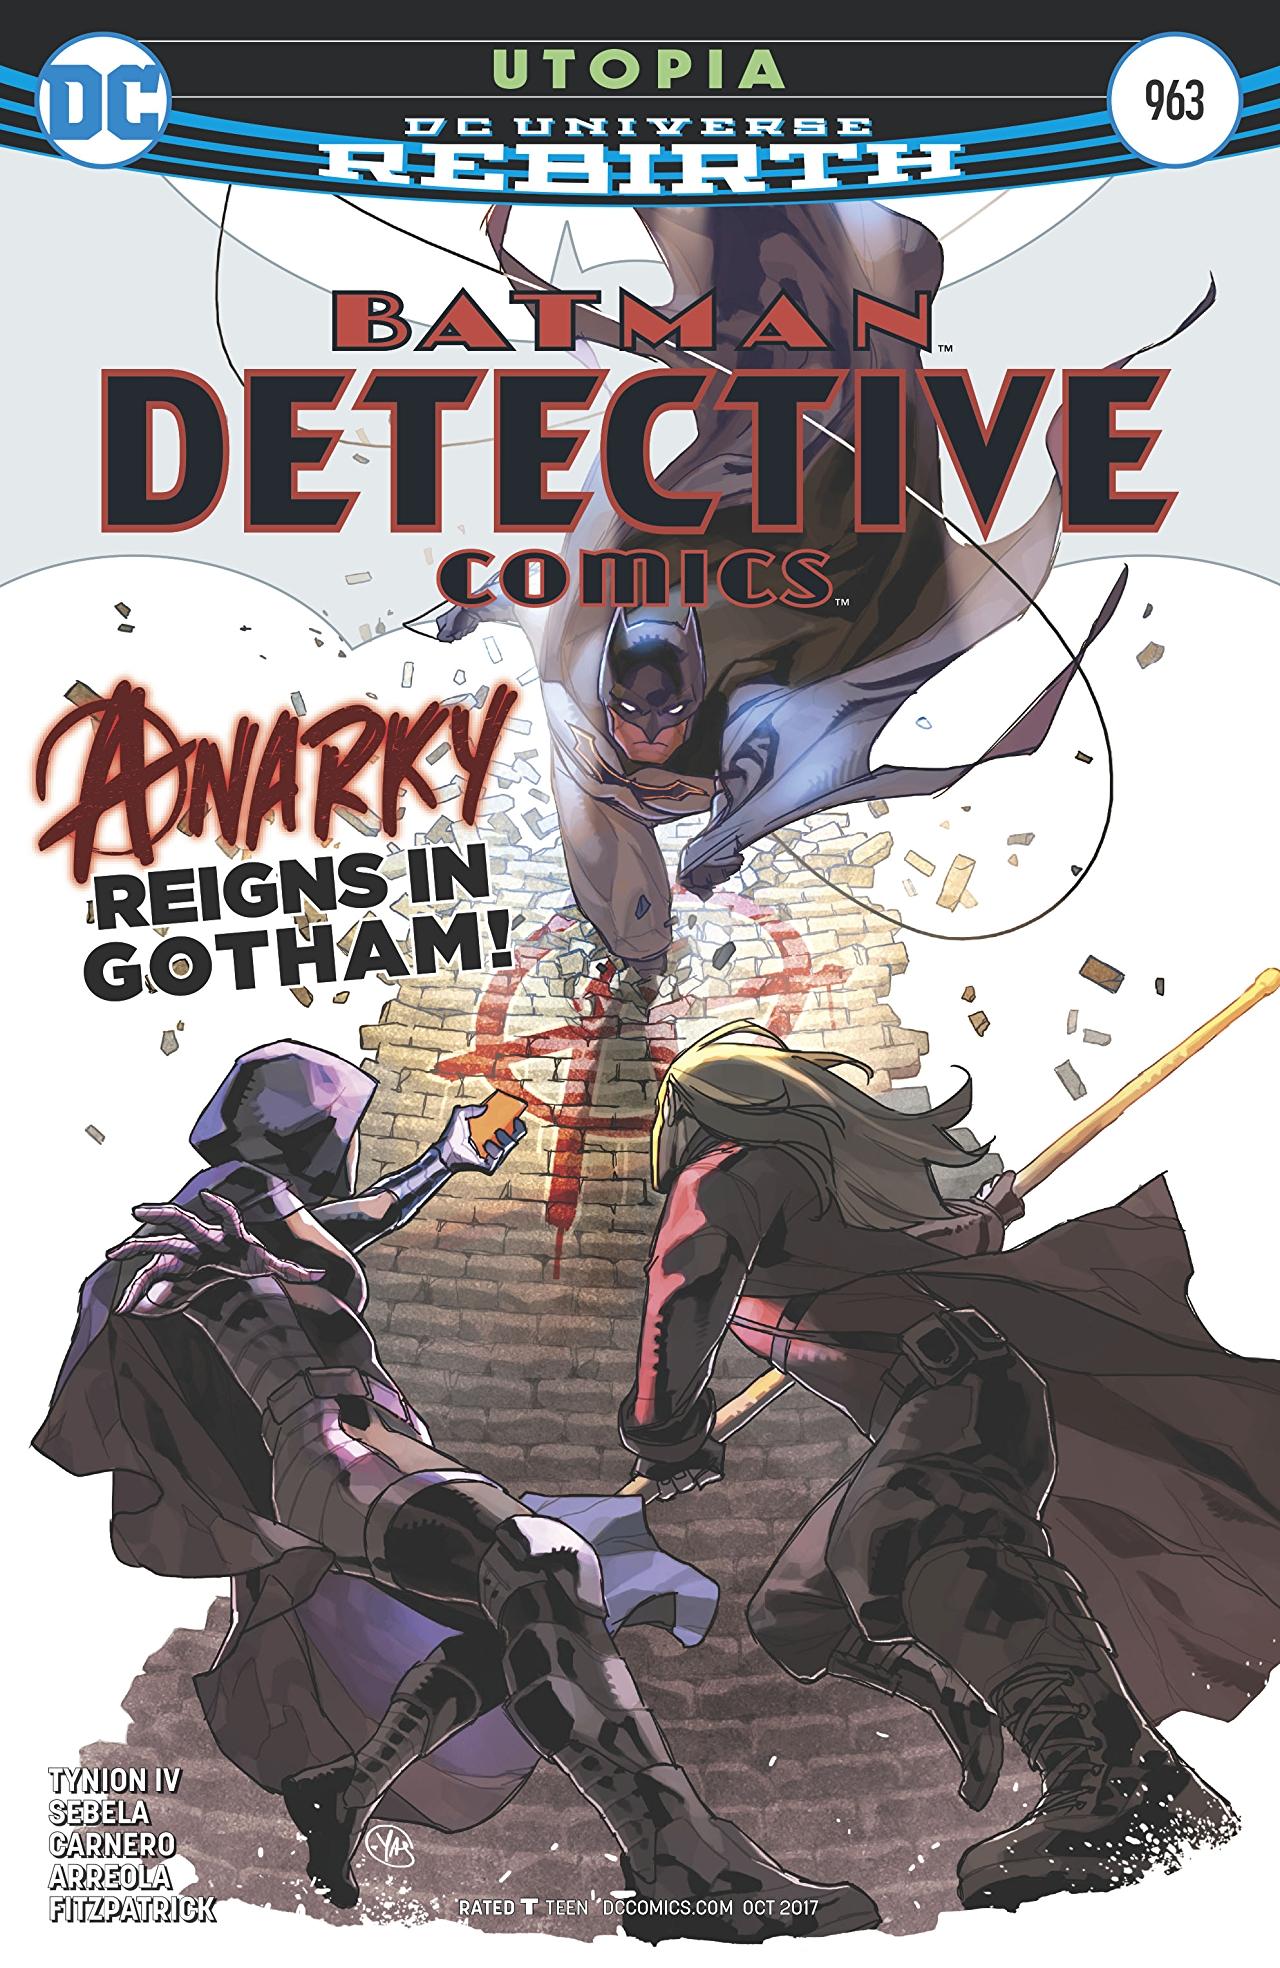 Detective Comics Vol. 1 #963